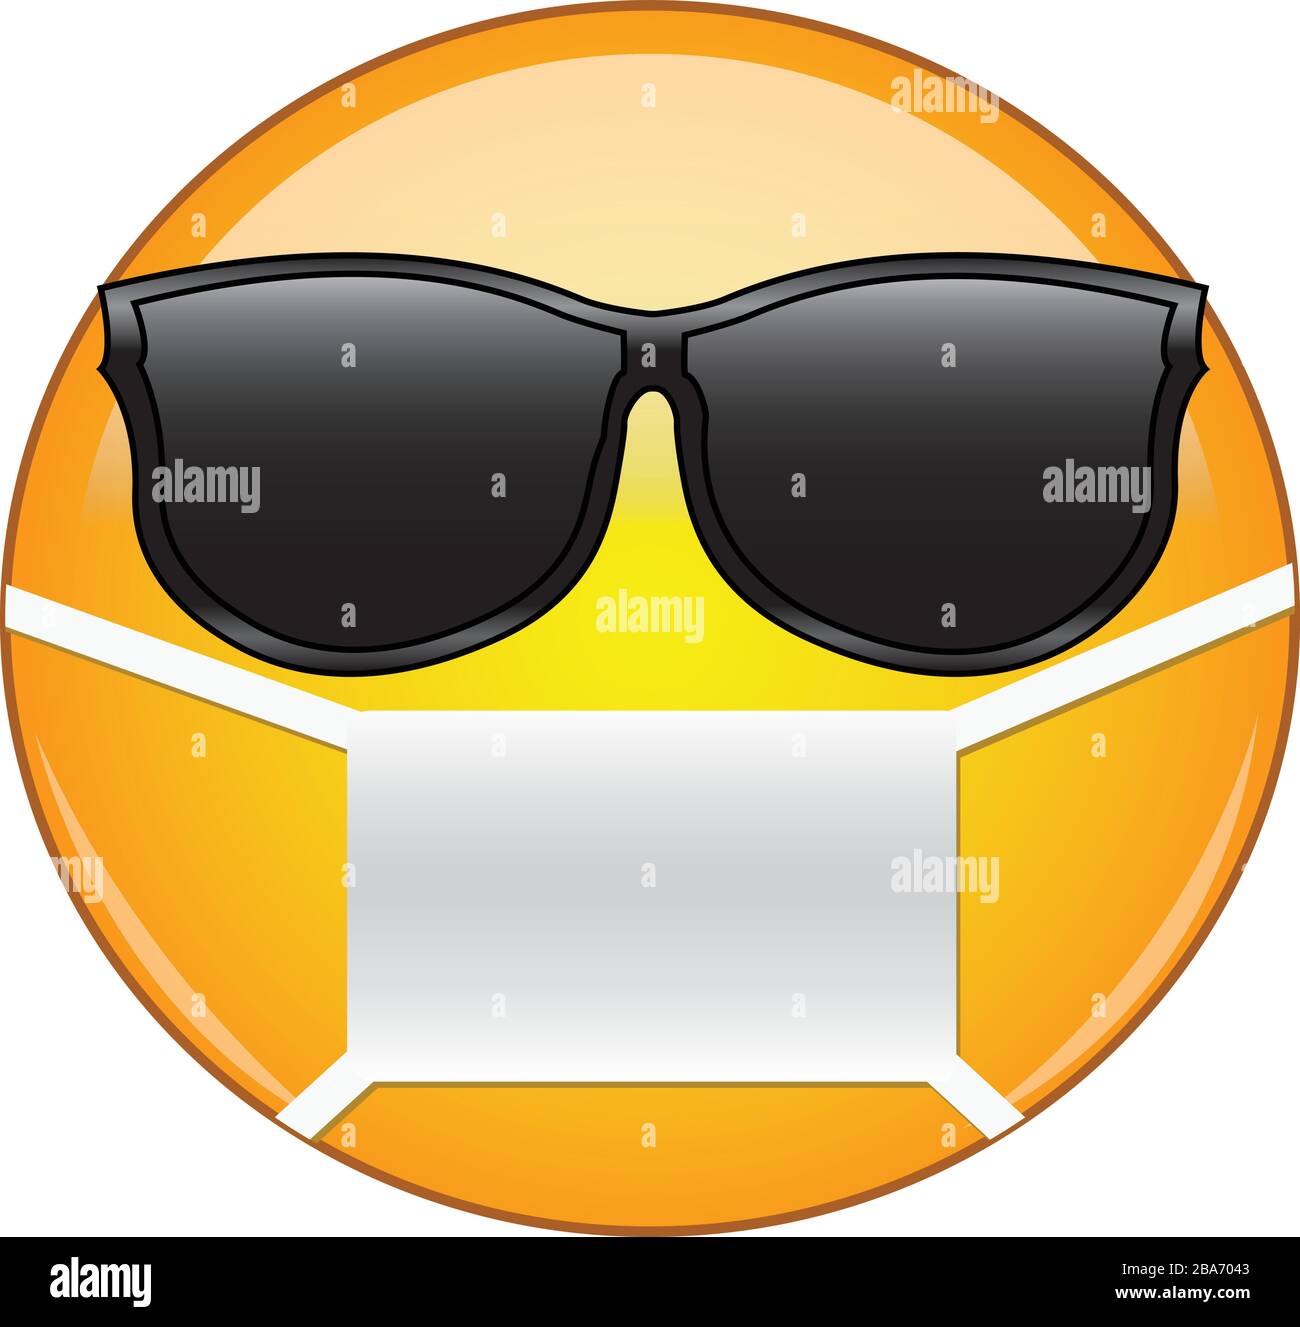 Cooles Emoticon mit Maske. Gelbes Emoji mit Sonnenbrille und Gesundheitsmaske zum Schutz vor Keimen, Viren, Luftverschmutzung und Smog. Stock Vektor